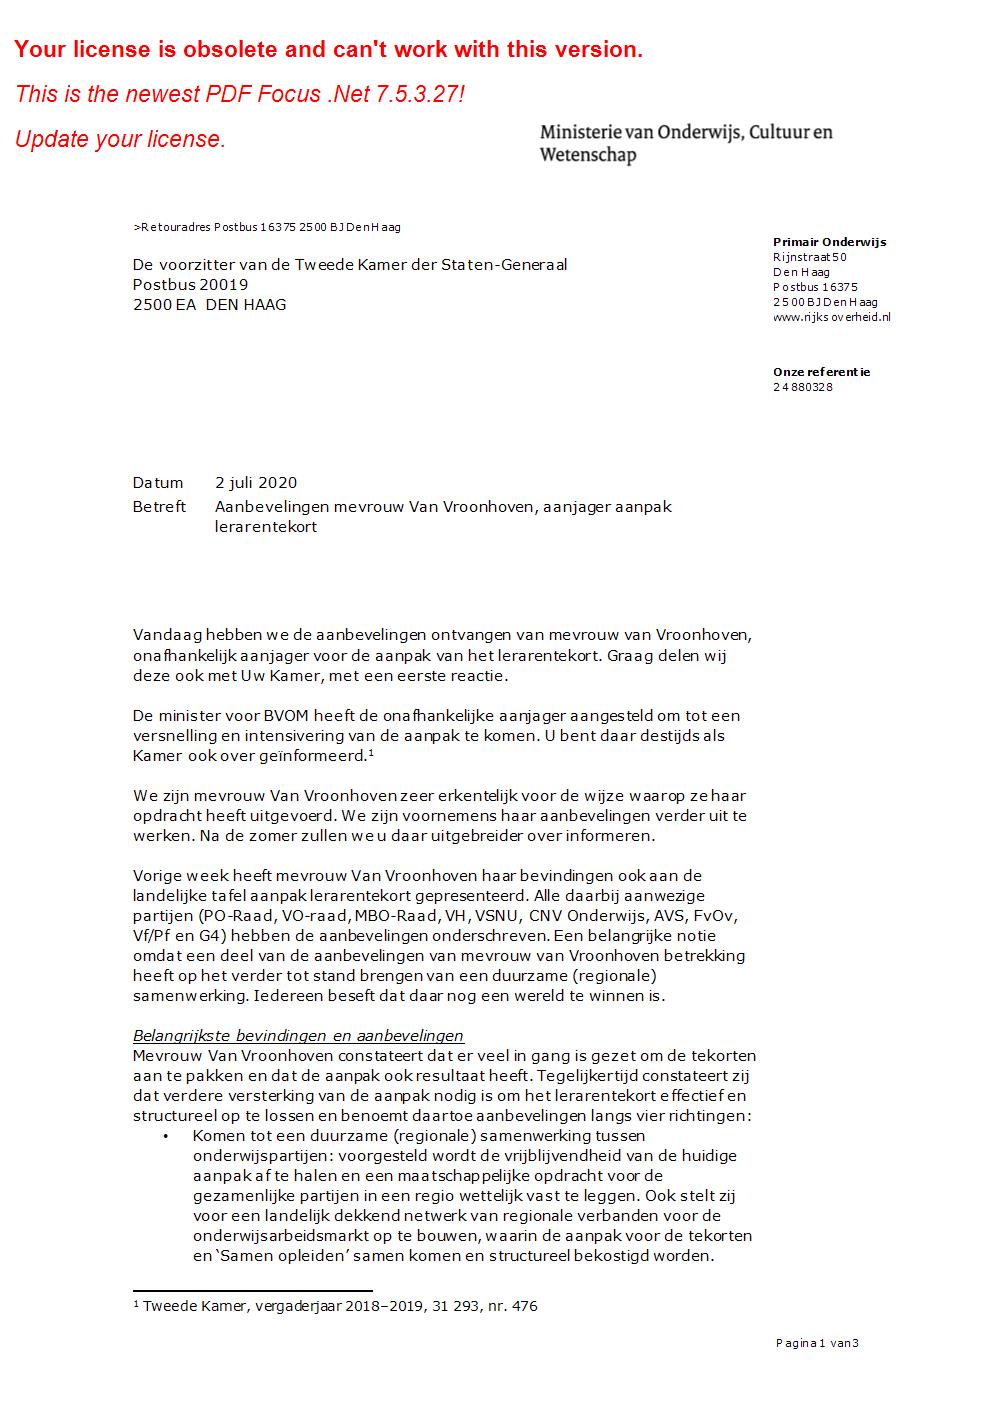 Kamerbrief over aanbevelingen mevrouw Van Vroonhoven over aanpak lerarentekort - 2 juli 2020